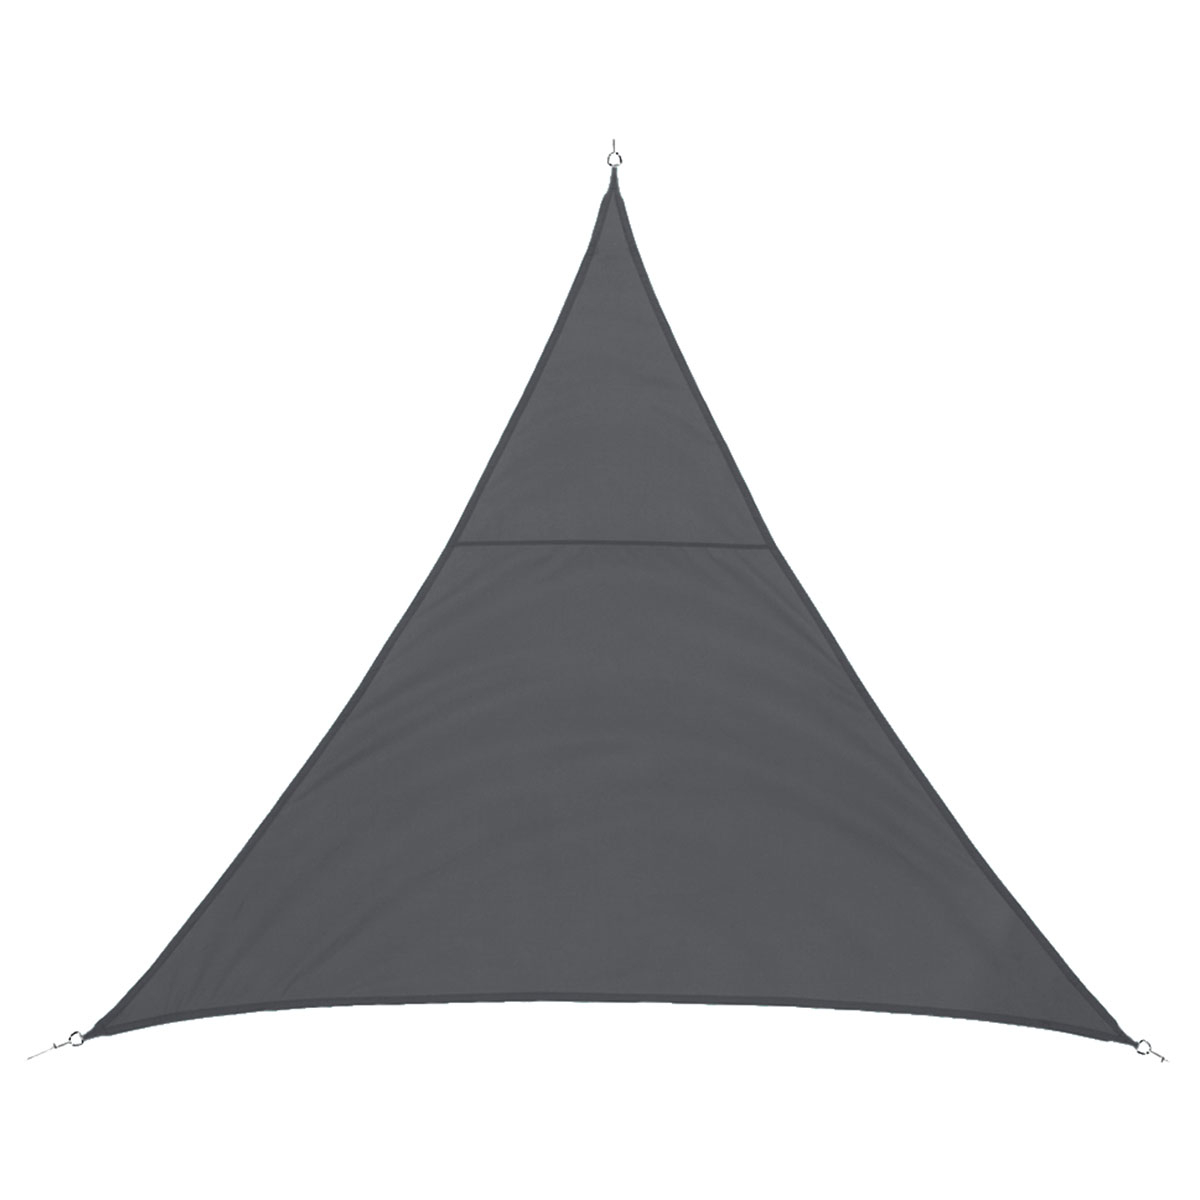 Τριγωνικό Σκίαστρο Αδιάβροχο & Αντιηλιακό (3x3x3) H-S Grey 171343A 202518